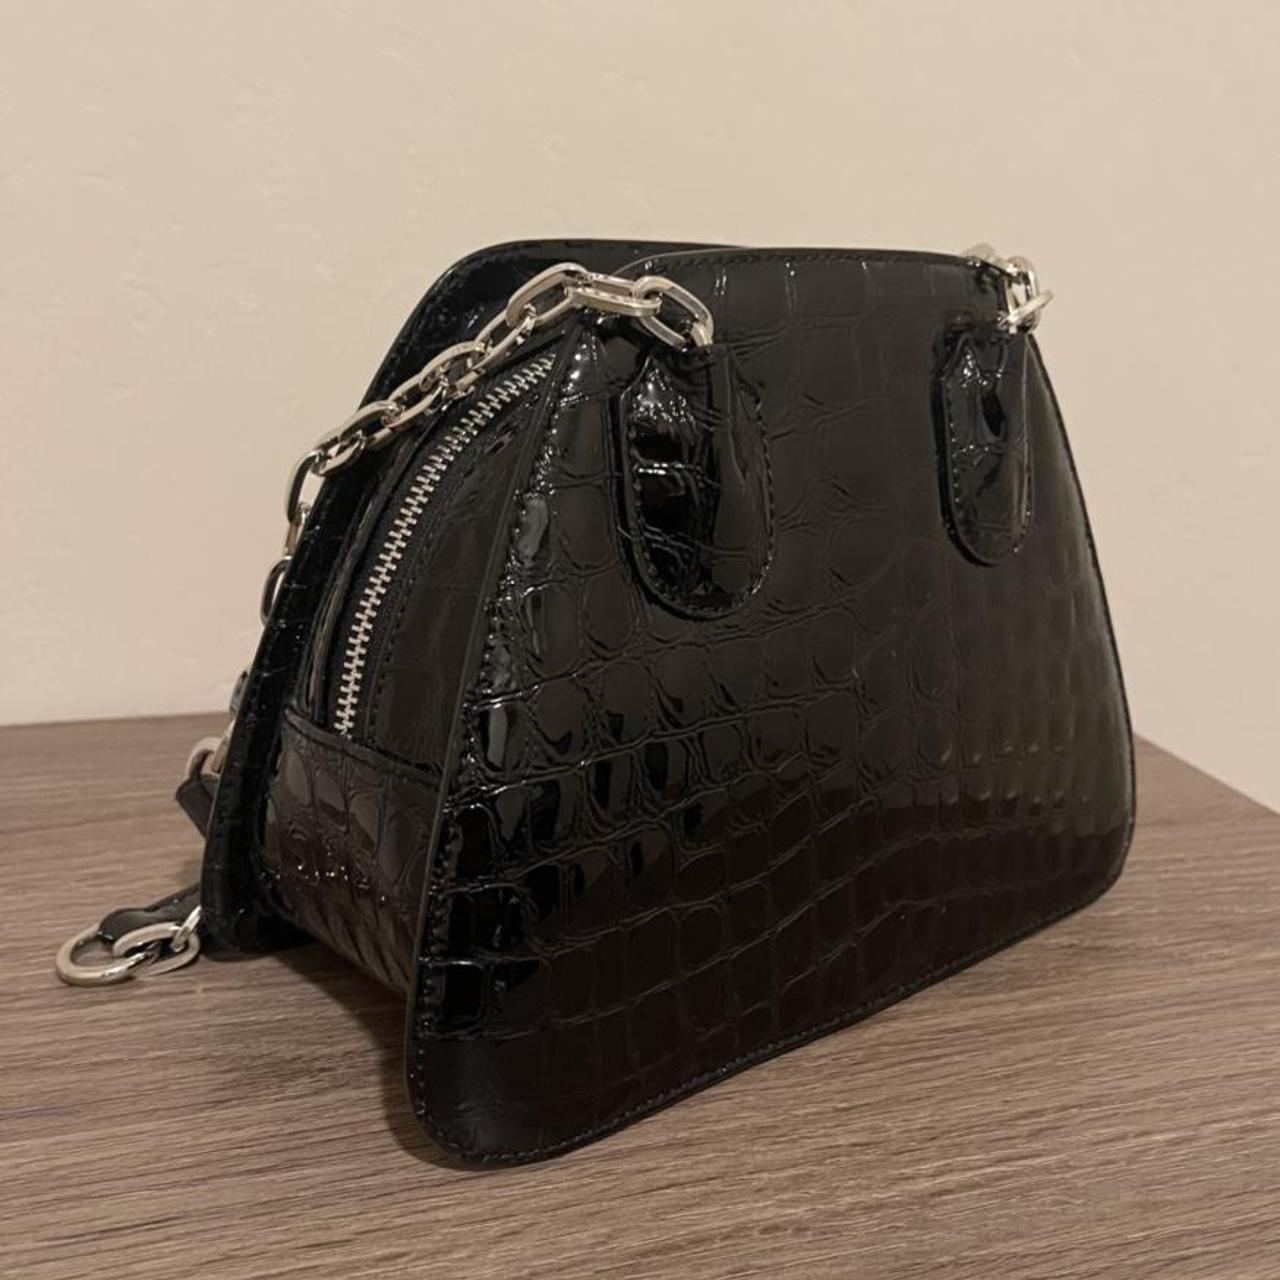 Vivienne Westwood black bag - Depop